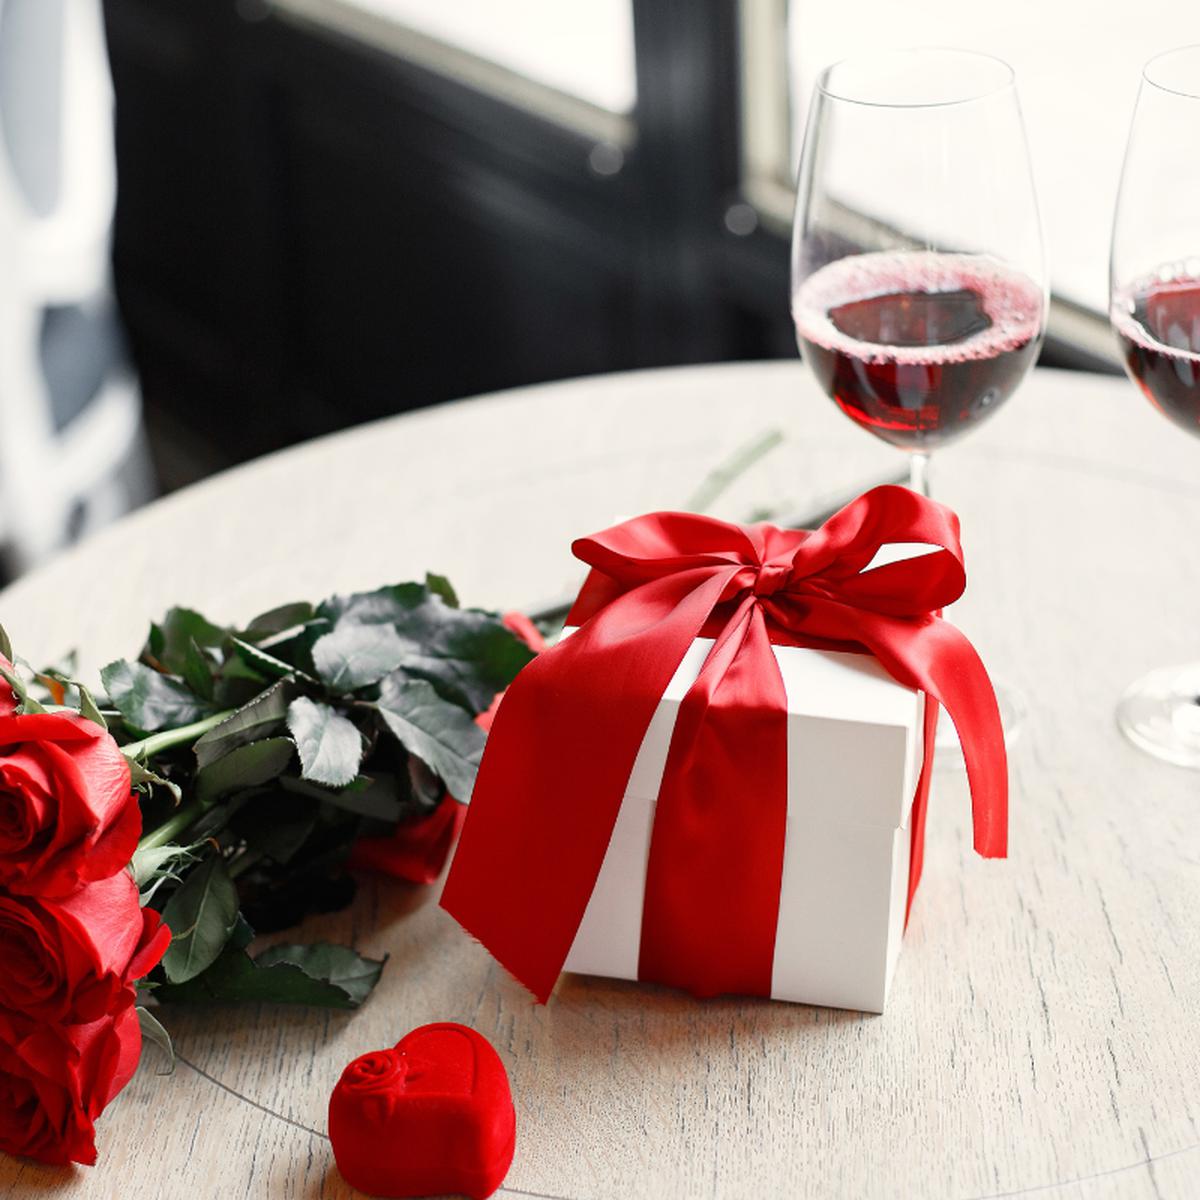  Regalo Dia de San Valentín, Dia del Amor y La Amistad